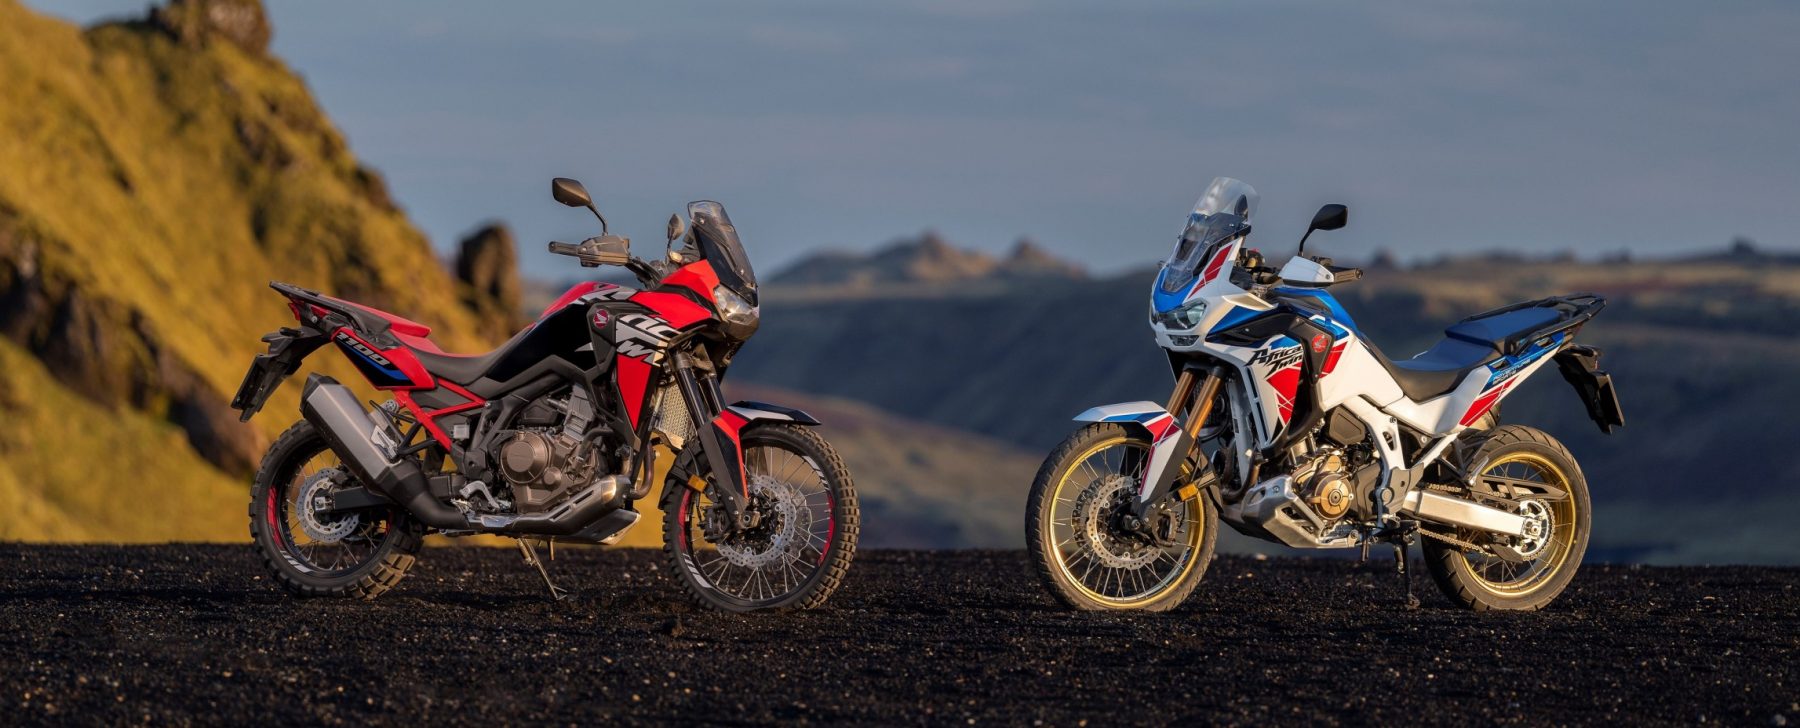 Honda actualiza la Africa Twin, su popular moto ‘trail’